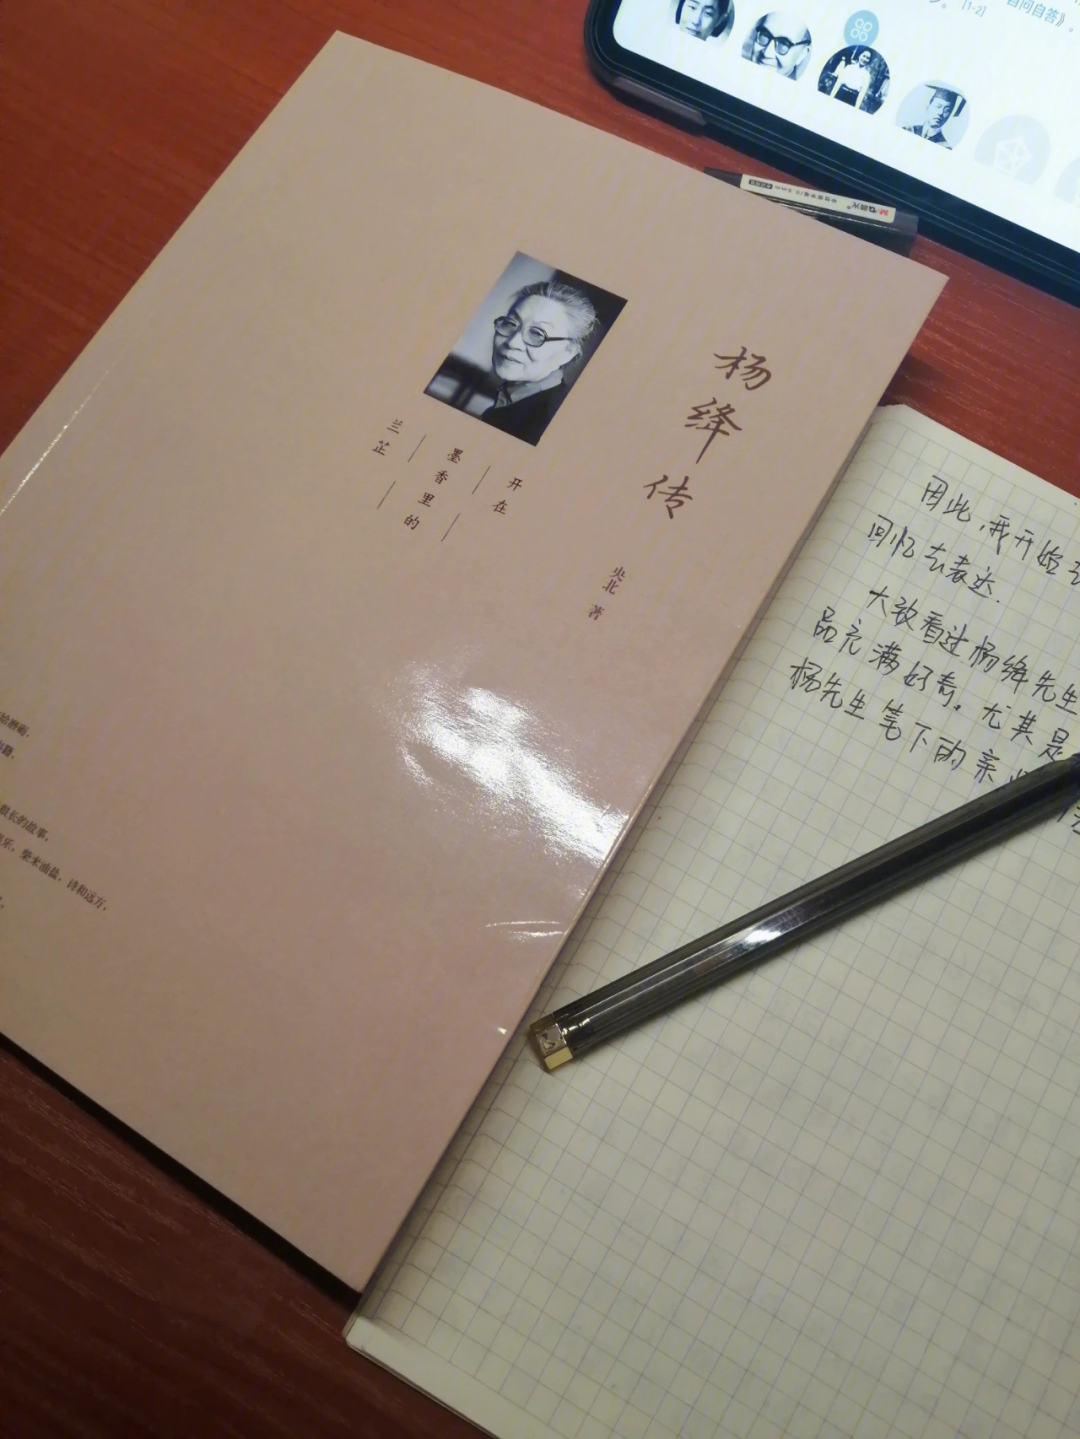 现在开始摘抄与读后记录向杨绛先生学习,做一个痴迷读书的人,毕竟书中